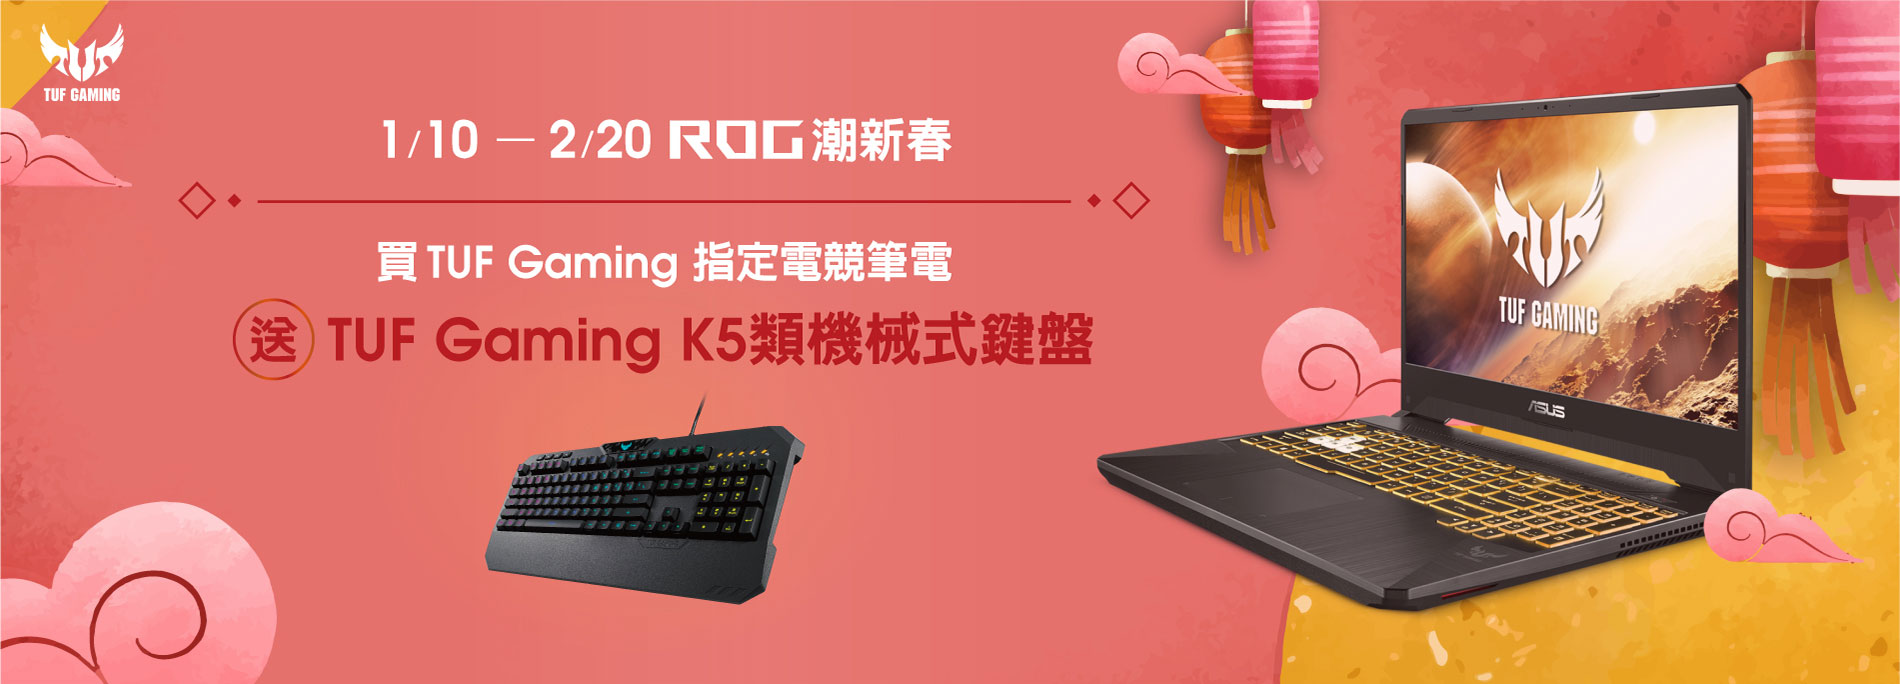 [筆電活動]買ROG TUF Gaming指定筆電 送TUF鍵盤